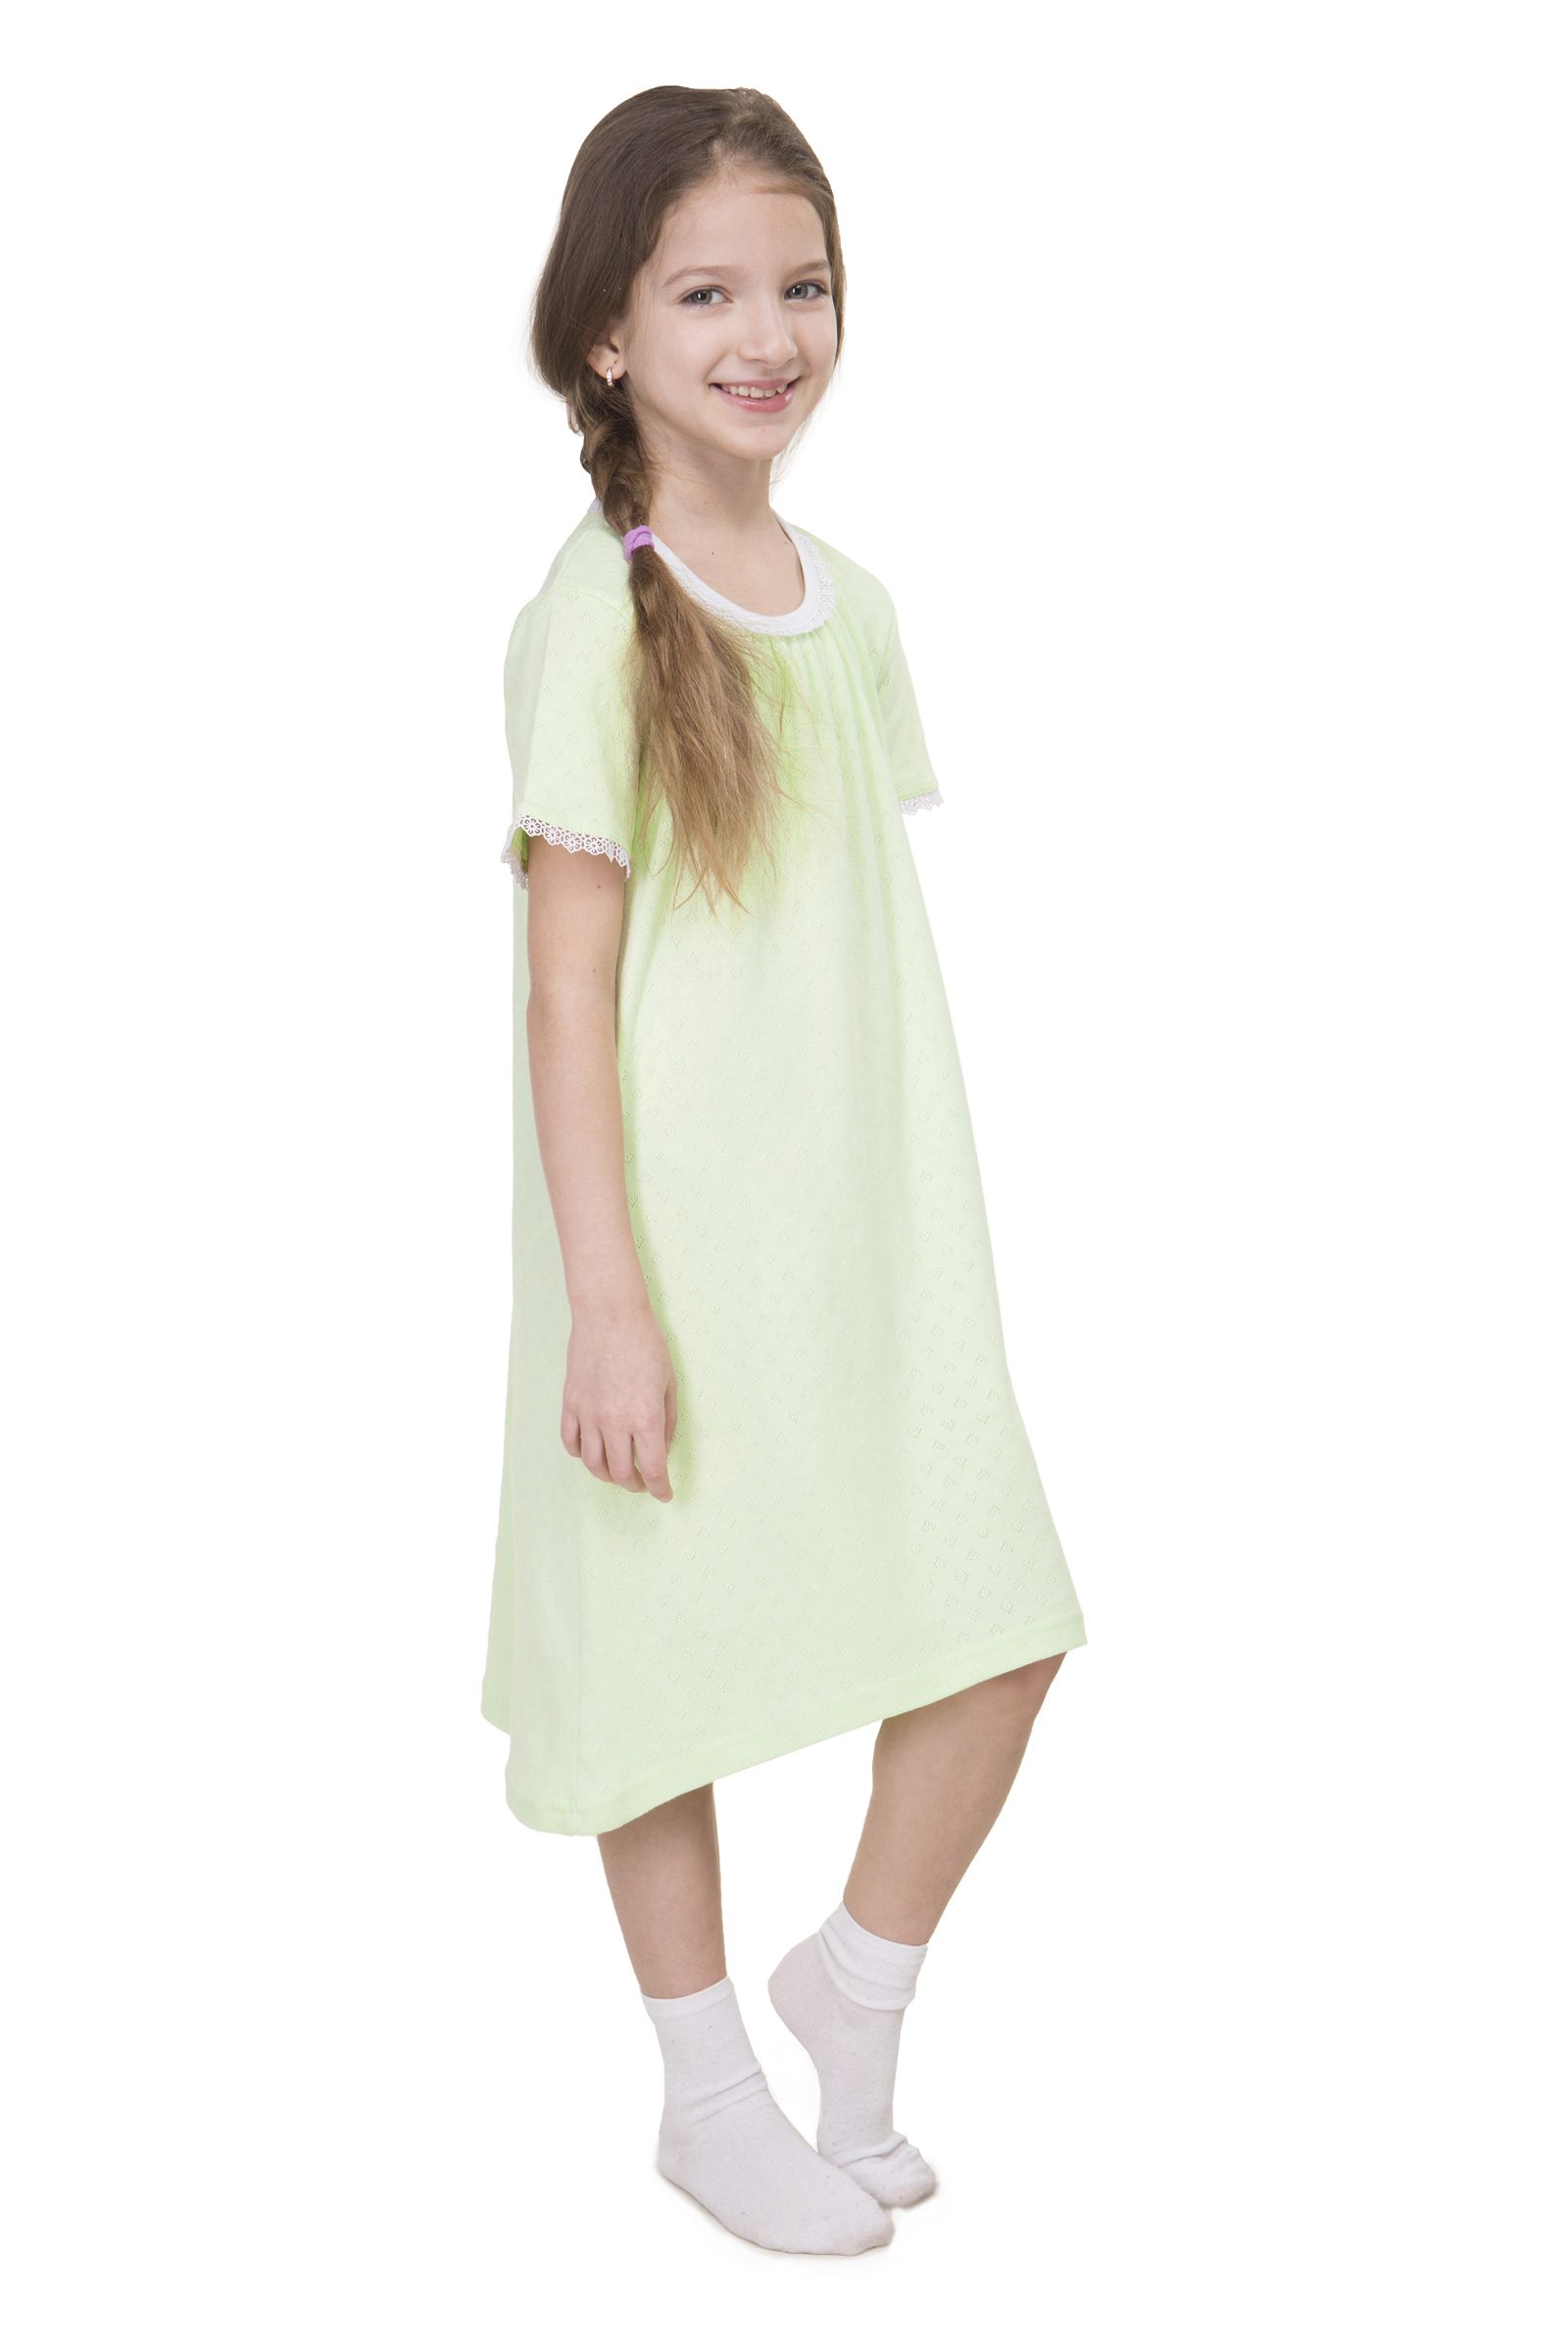 Сорочка-СР03-3569 оптом от производителя детской одежды 'Алёна'